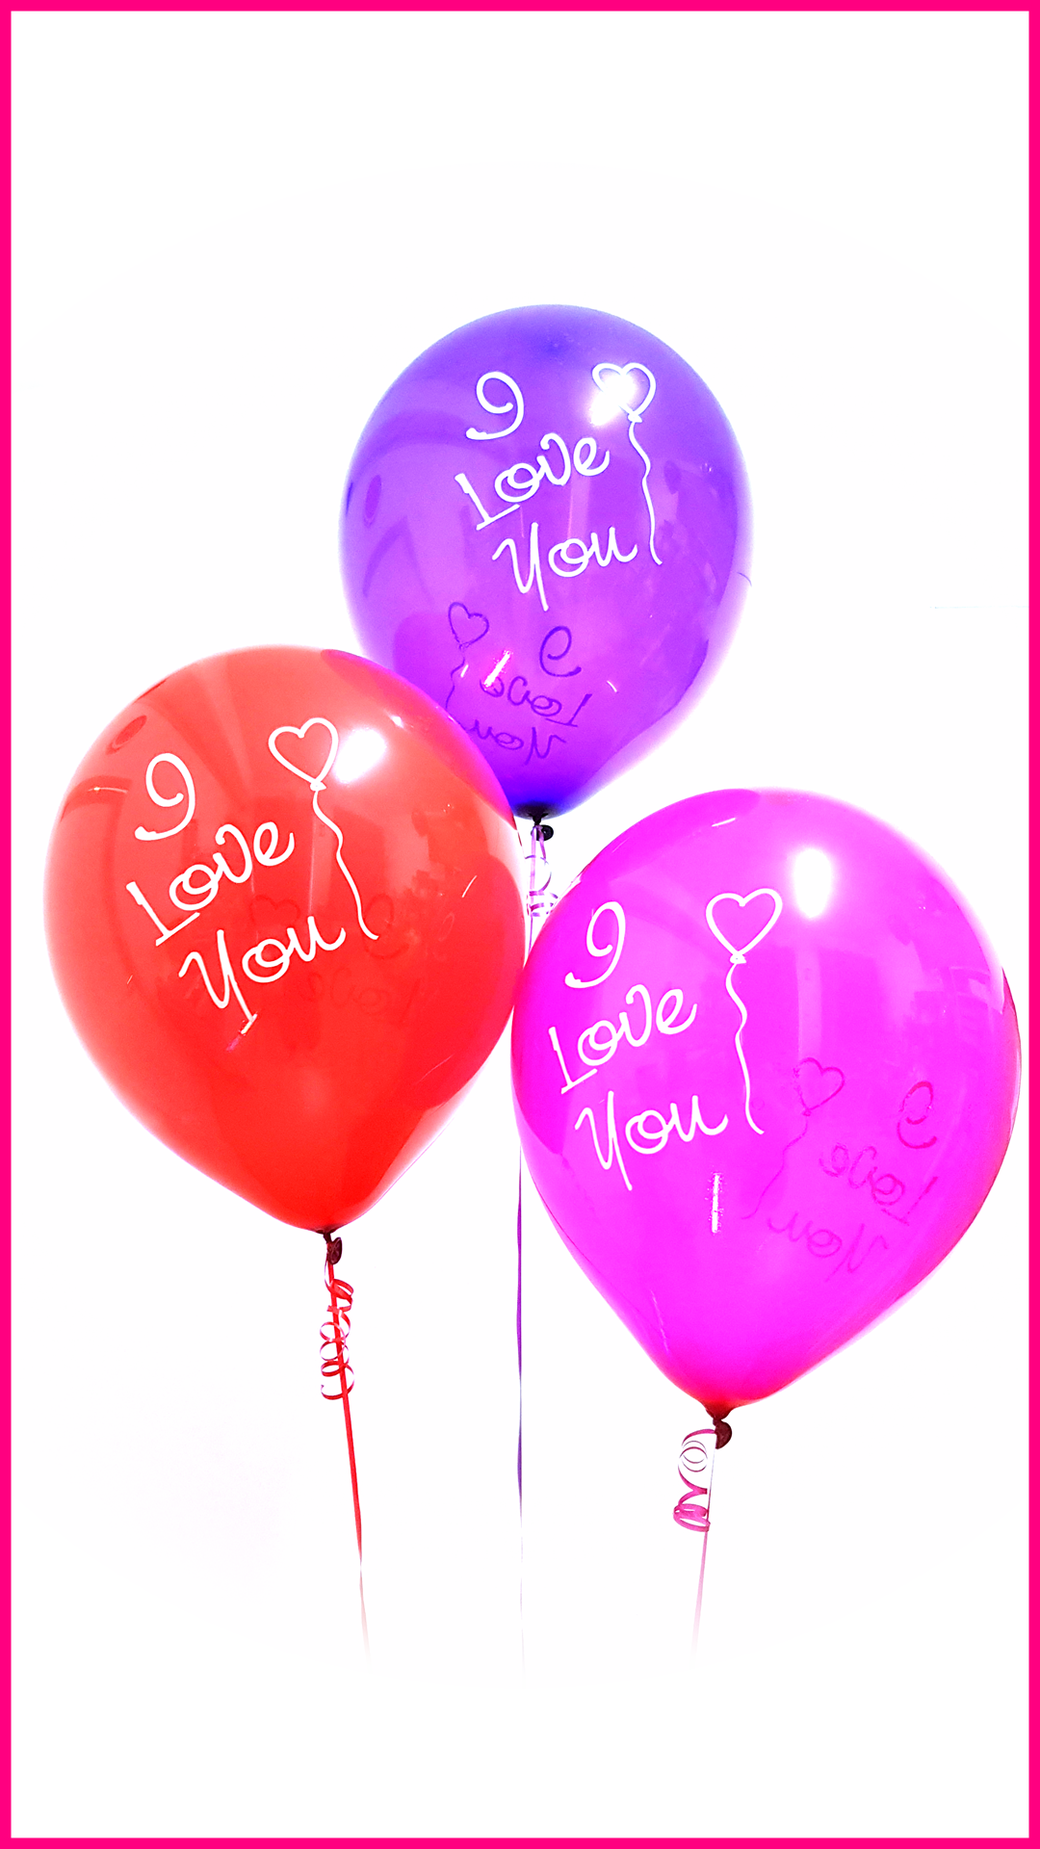 TUFTEX Riesenballon Riesenballons Giant balloon Luftballon Kristall Crystal rot red lila purple pink fuchsia magenta I love You Ich liebe dich MCR